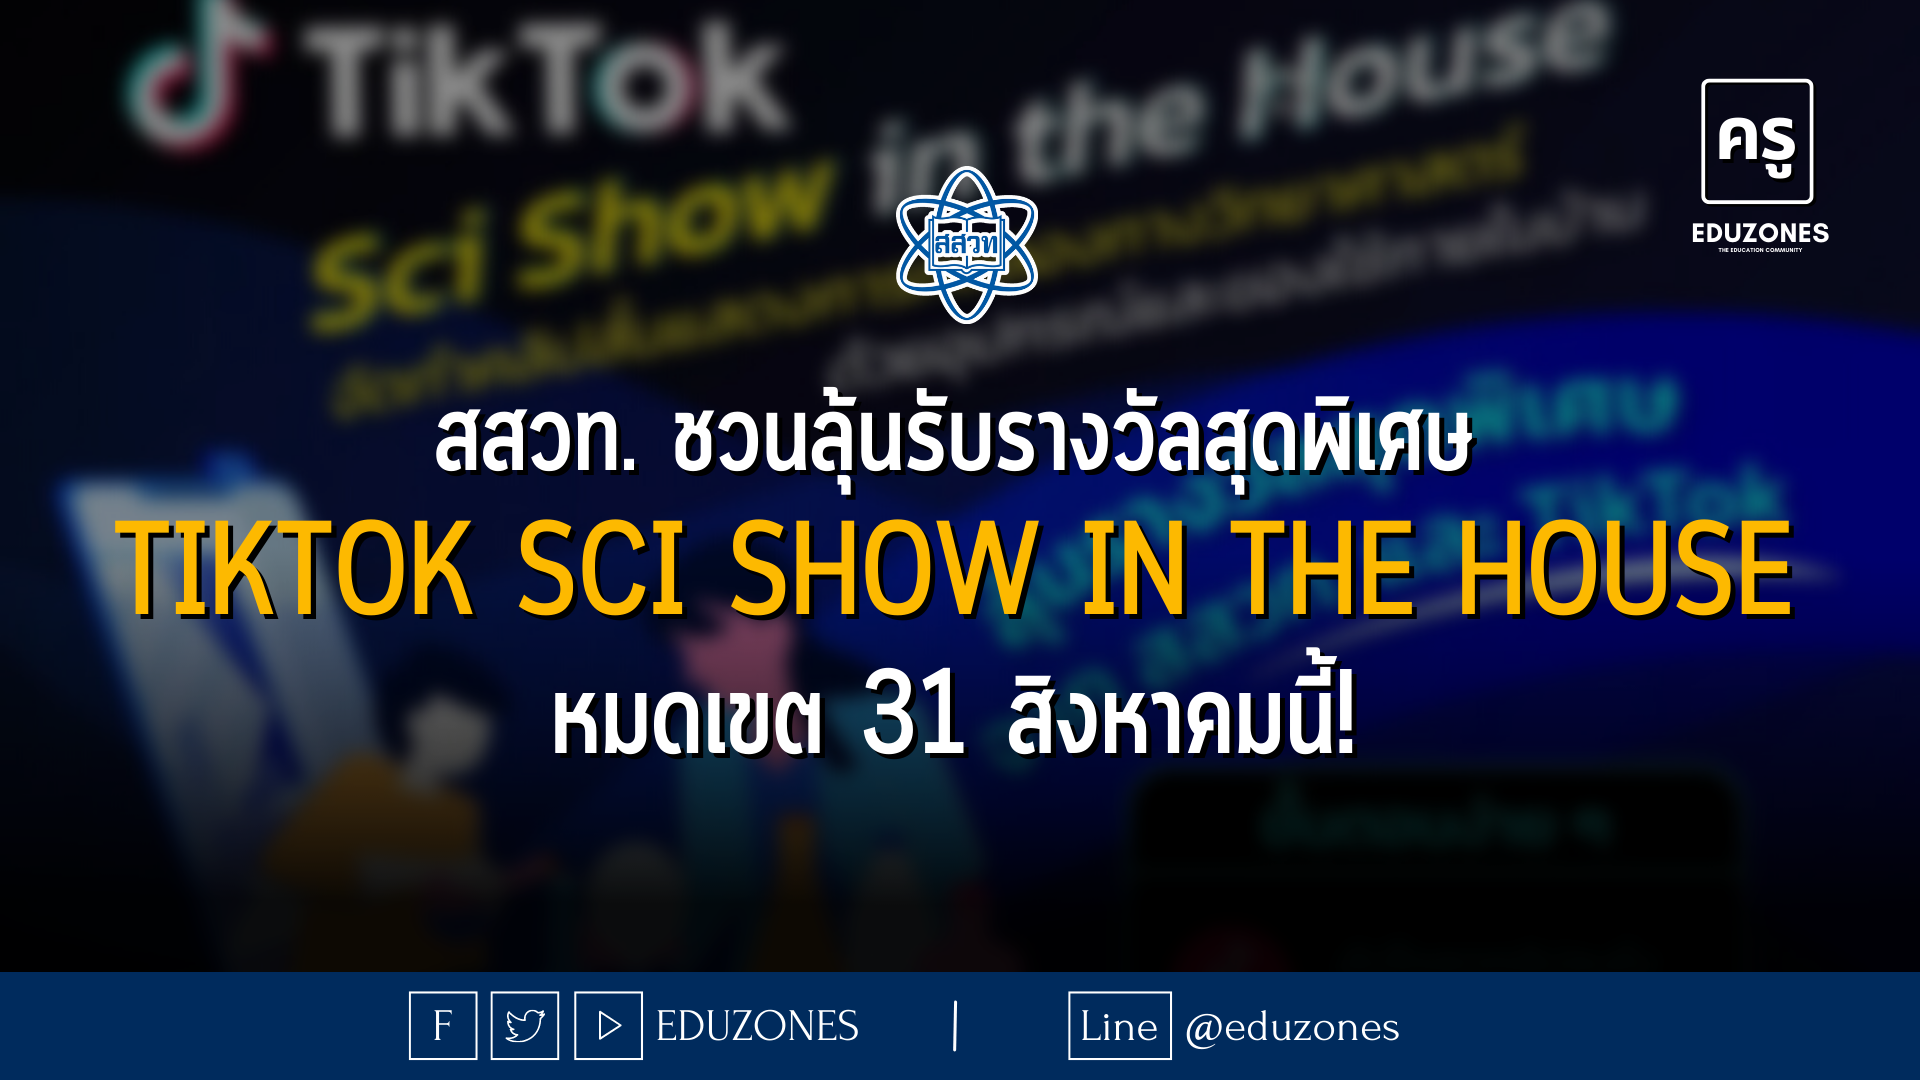 สสวท. ร่วมกับ TikTok ประเทศไทย เชิญชวนส่งผลงานคลิปสั้นการทดลองทางวิทยาศาสตร์ “TikTok Sci Show in the House” จัดทำคลิปสั้นแสดงการทดลองทางวิทยาศาสตร์ด้วยอุปกรณ์และของใช้ง่าย ๆ ภายในบ้าน ลุ้นรับรางวัลสุดพิเศษ!